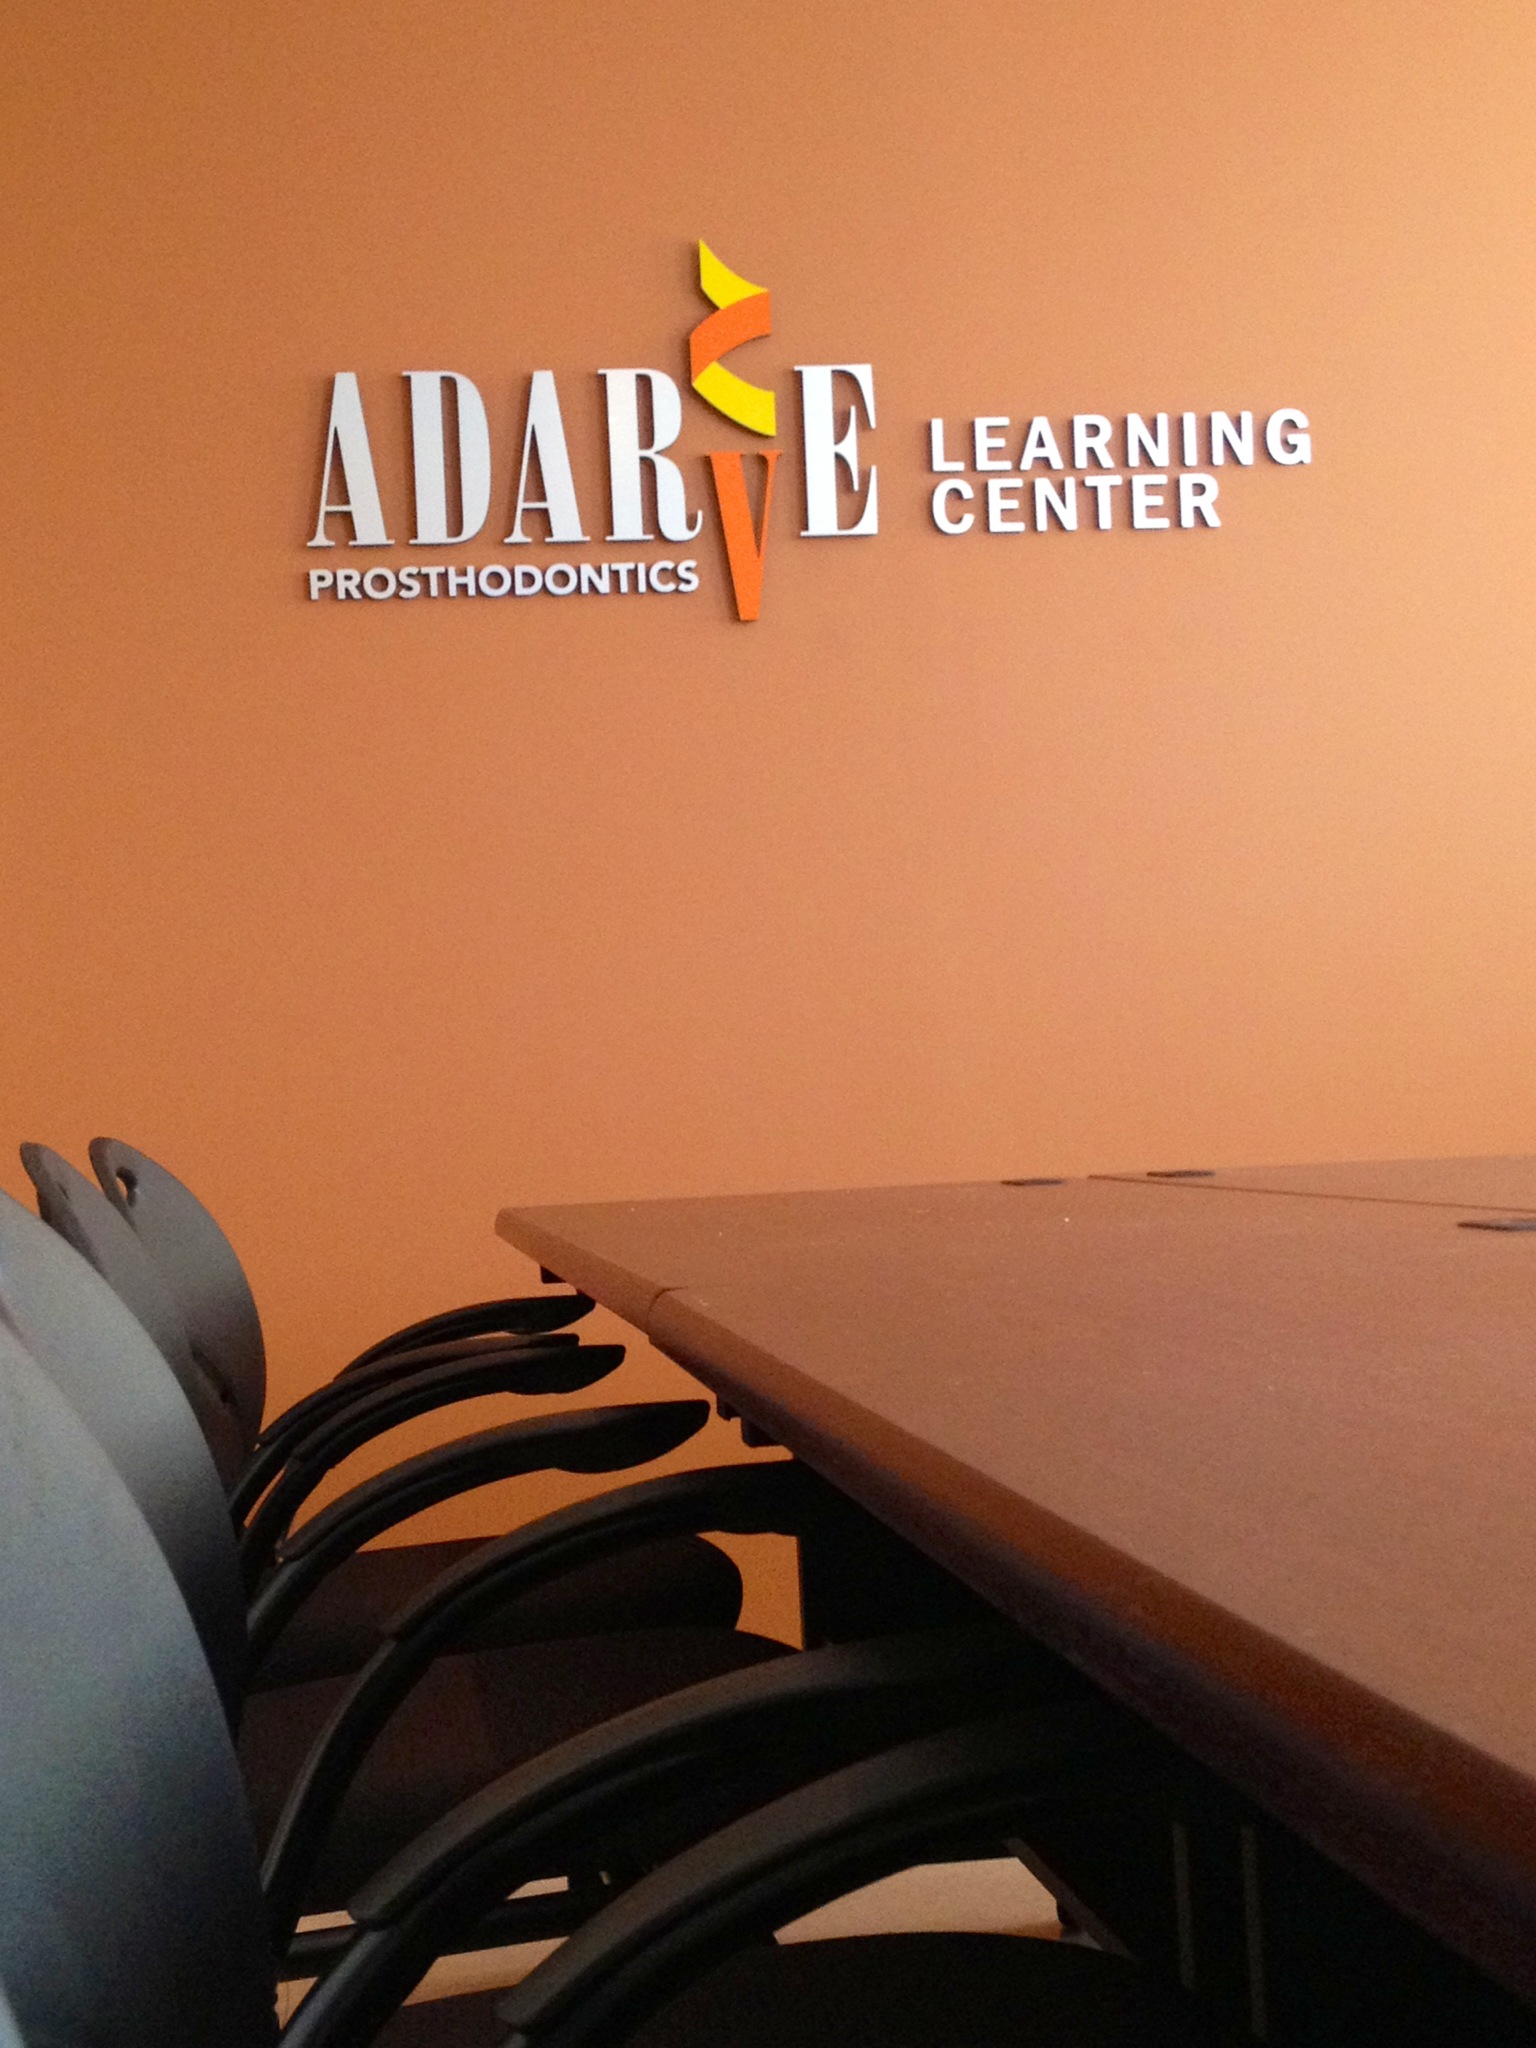 Adarve Prosthodontics Learning Center